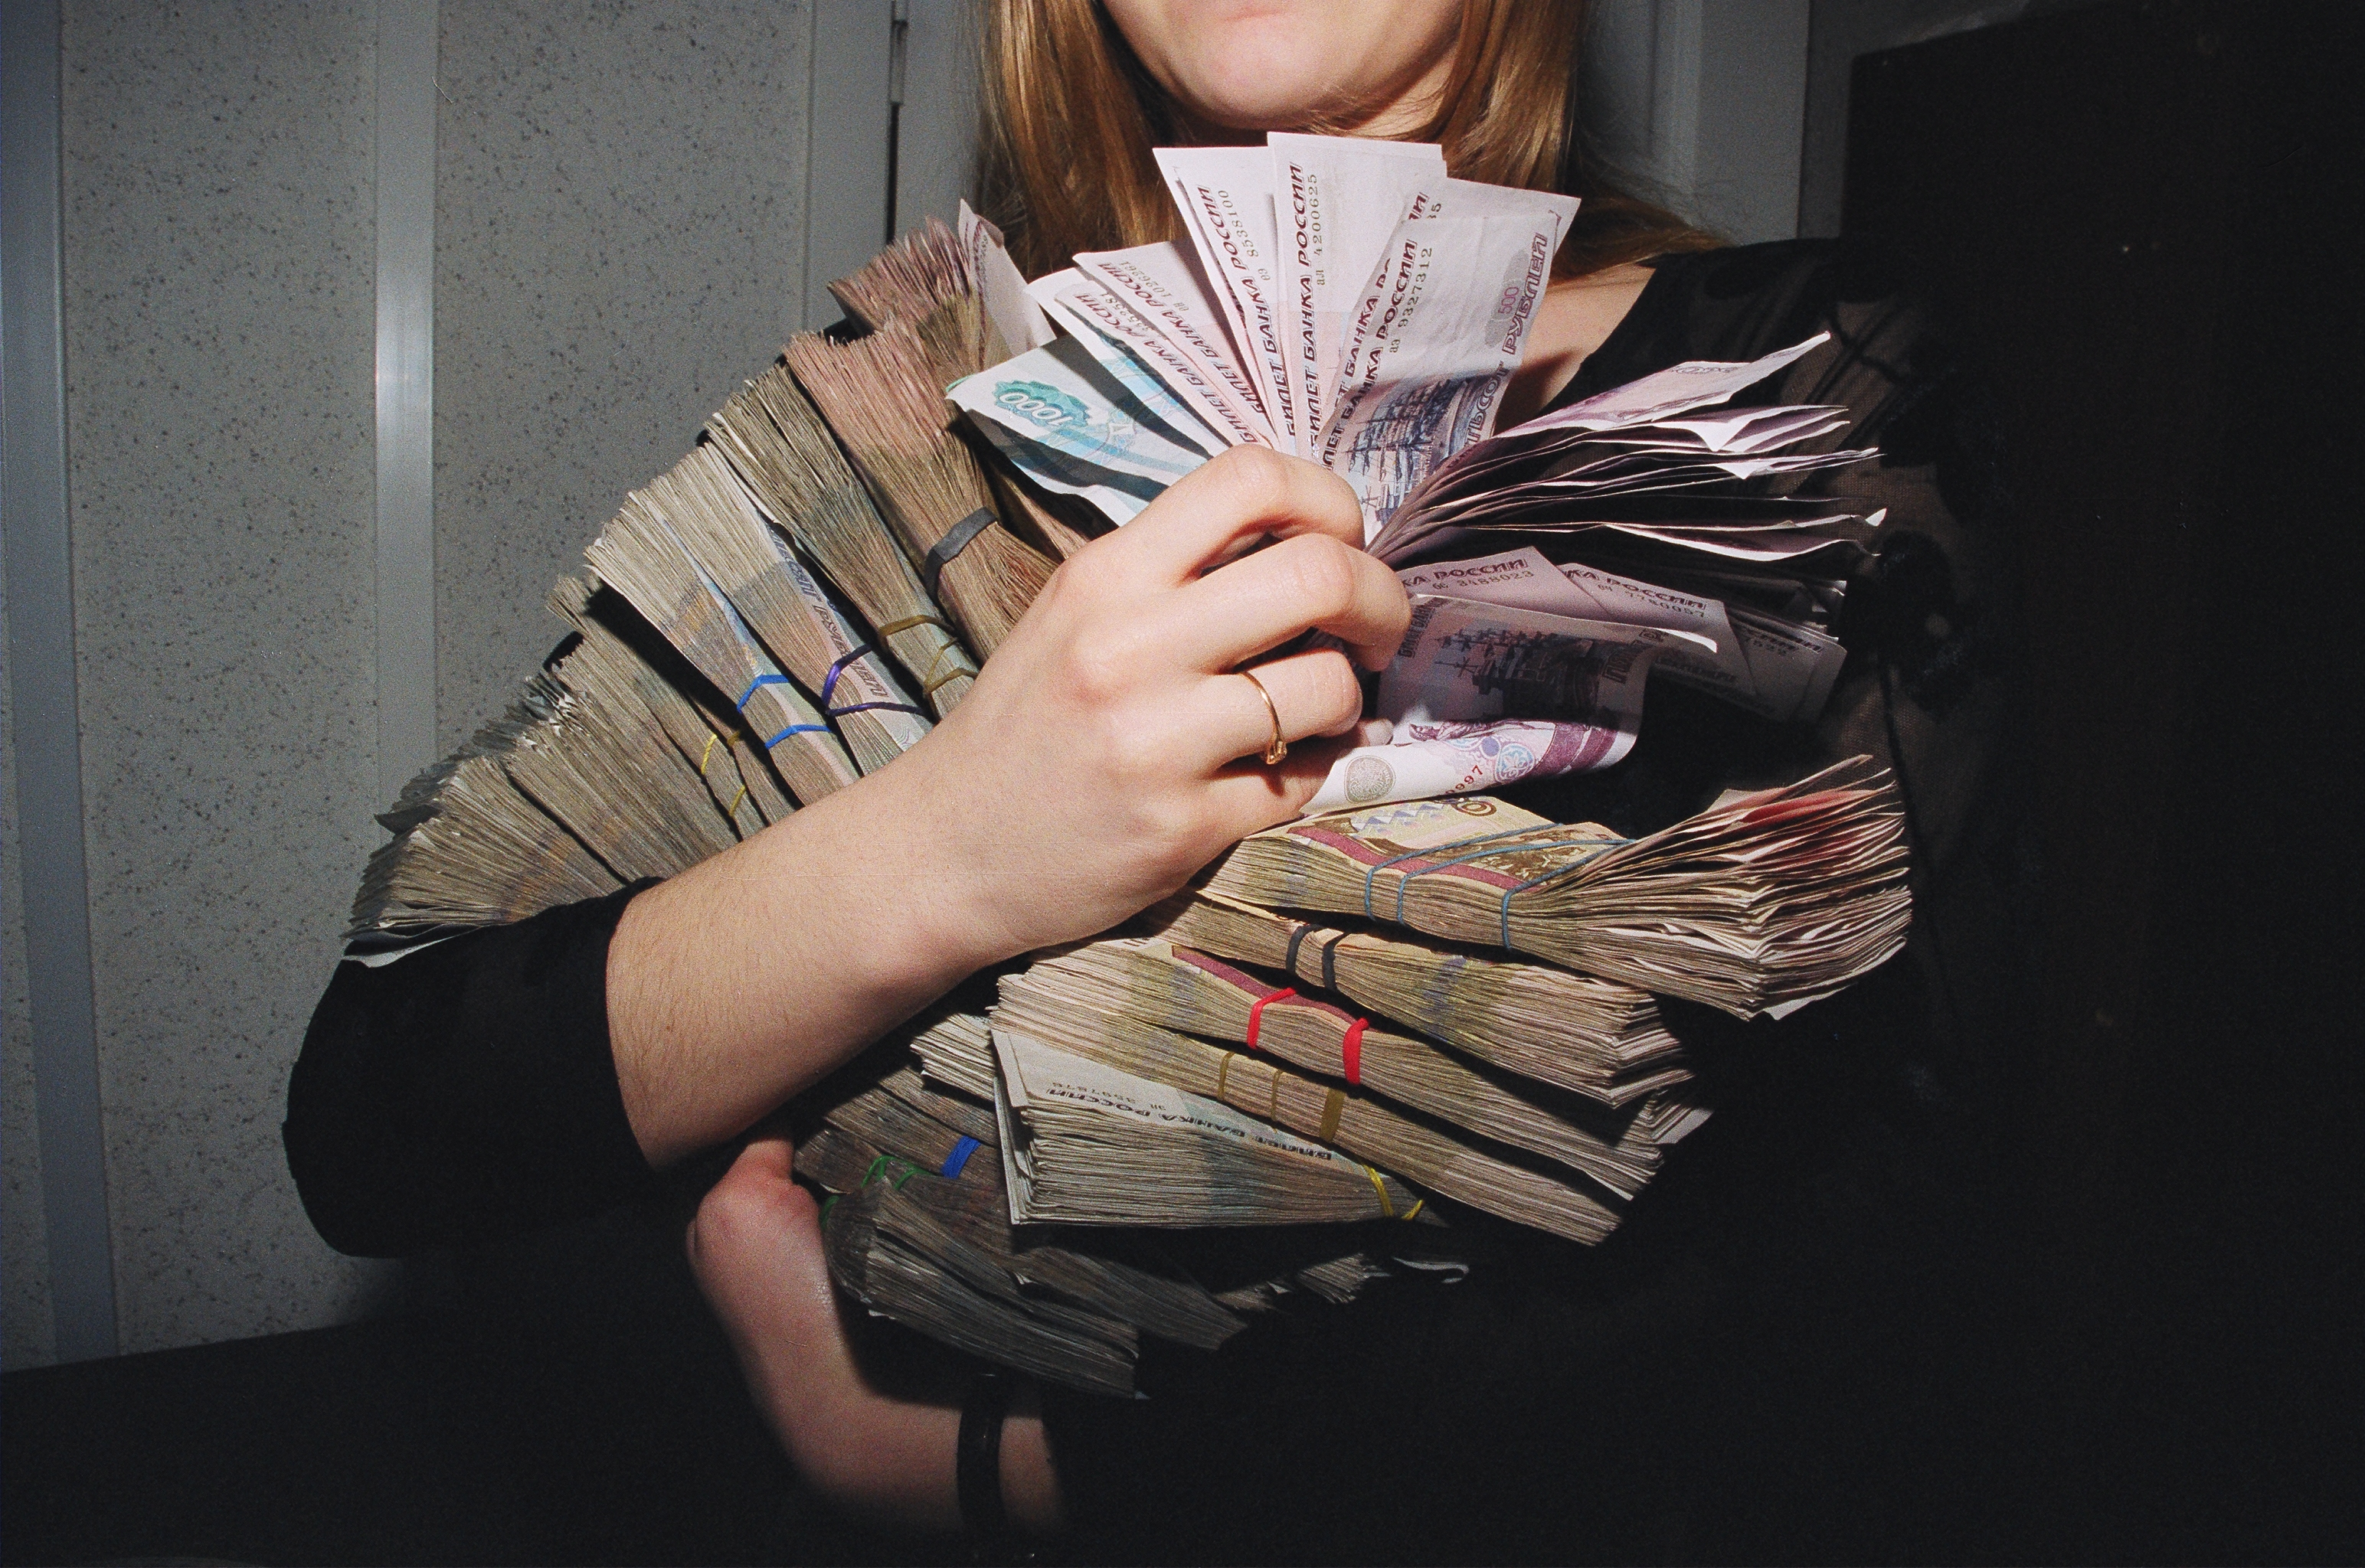 23 млн рублей. Деньги в руках женщины. Пачка денег в женских руках. Миллион рублей в руках. Куча денег в руках.